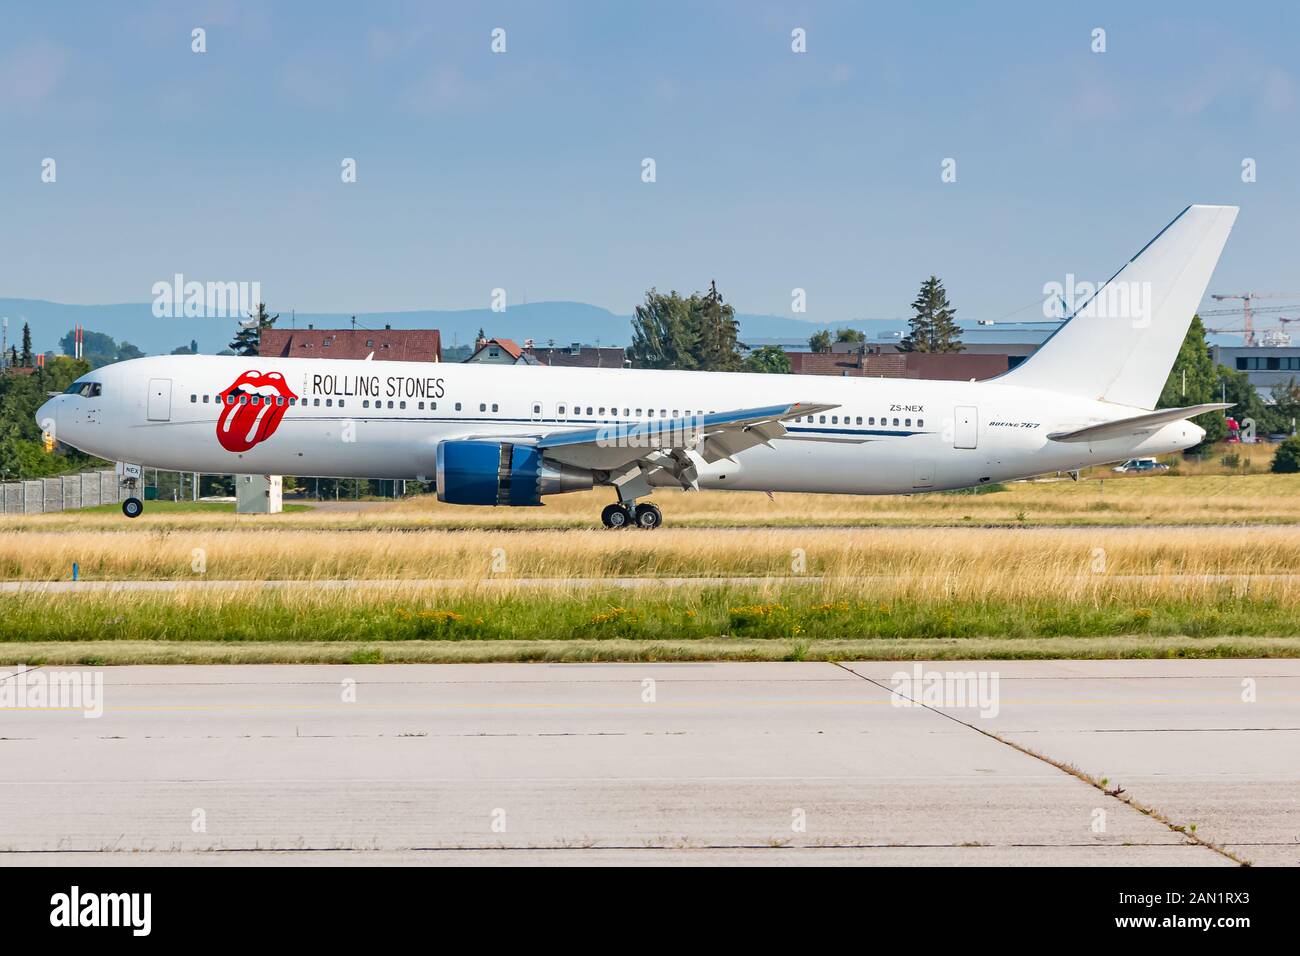 Stuttgart, Allemagne - le 16 décembre 2018 : Rollings Stones Boeing 767 avion à l'aéroport de Stuttgart (STR) en Allemagne. Boeing est un constructeur de l'avion Banque D'Images